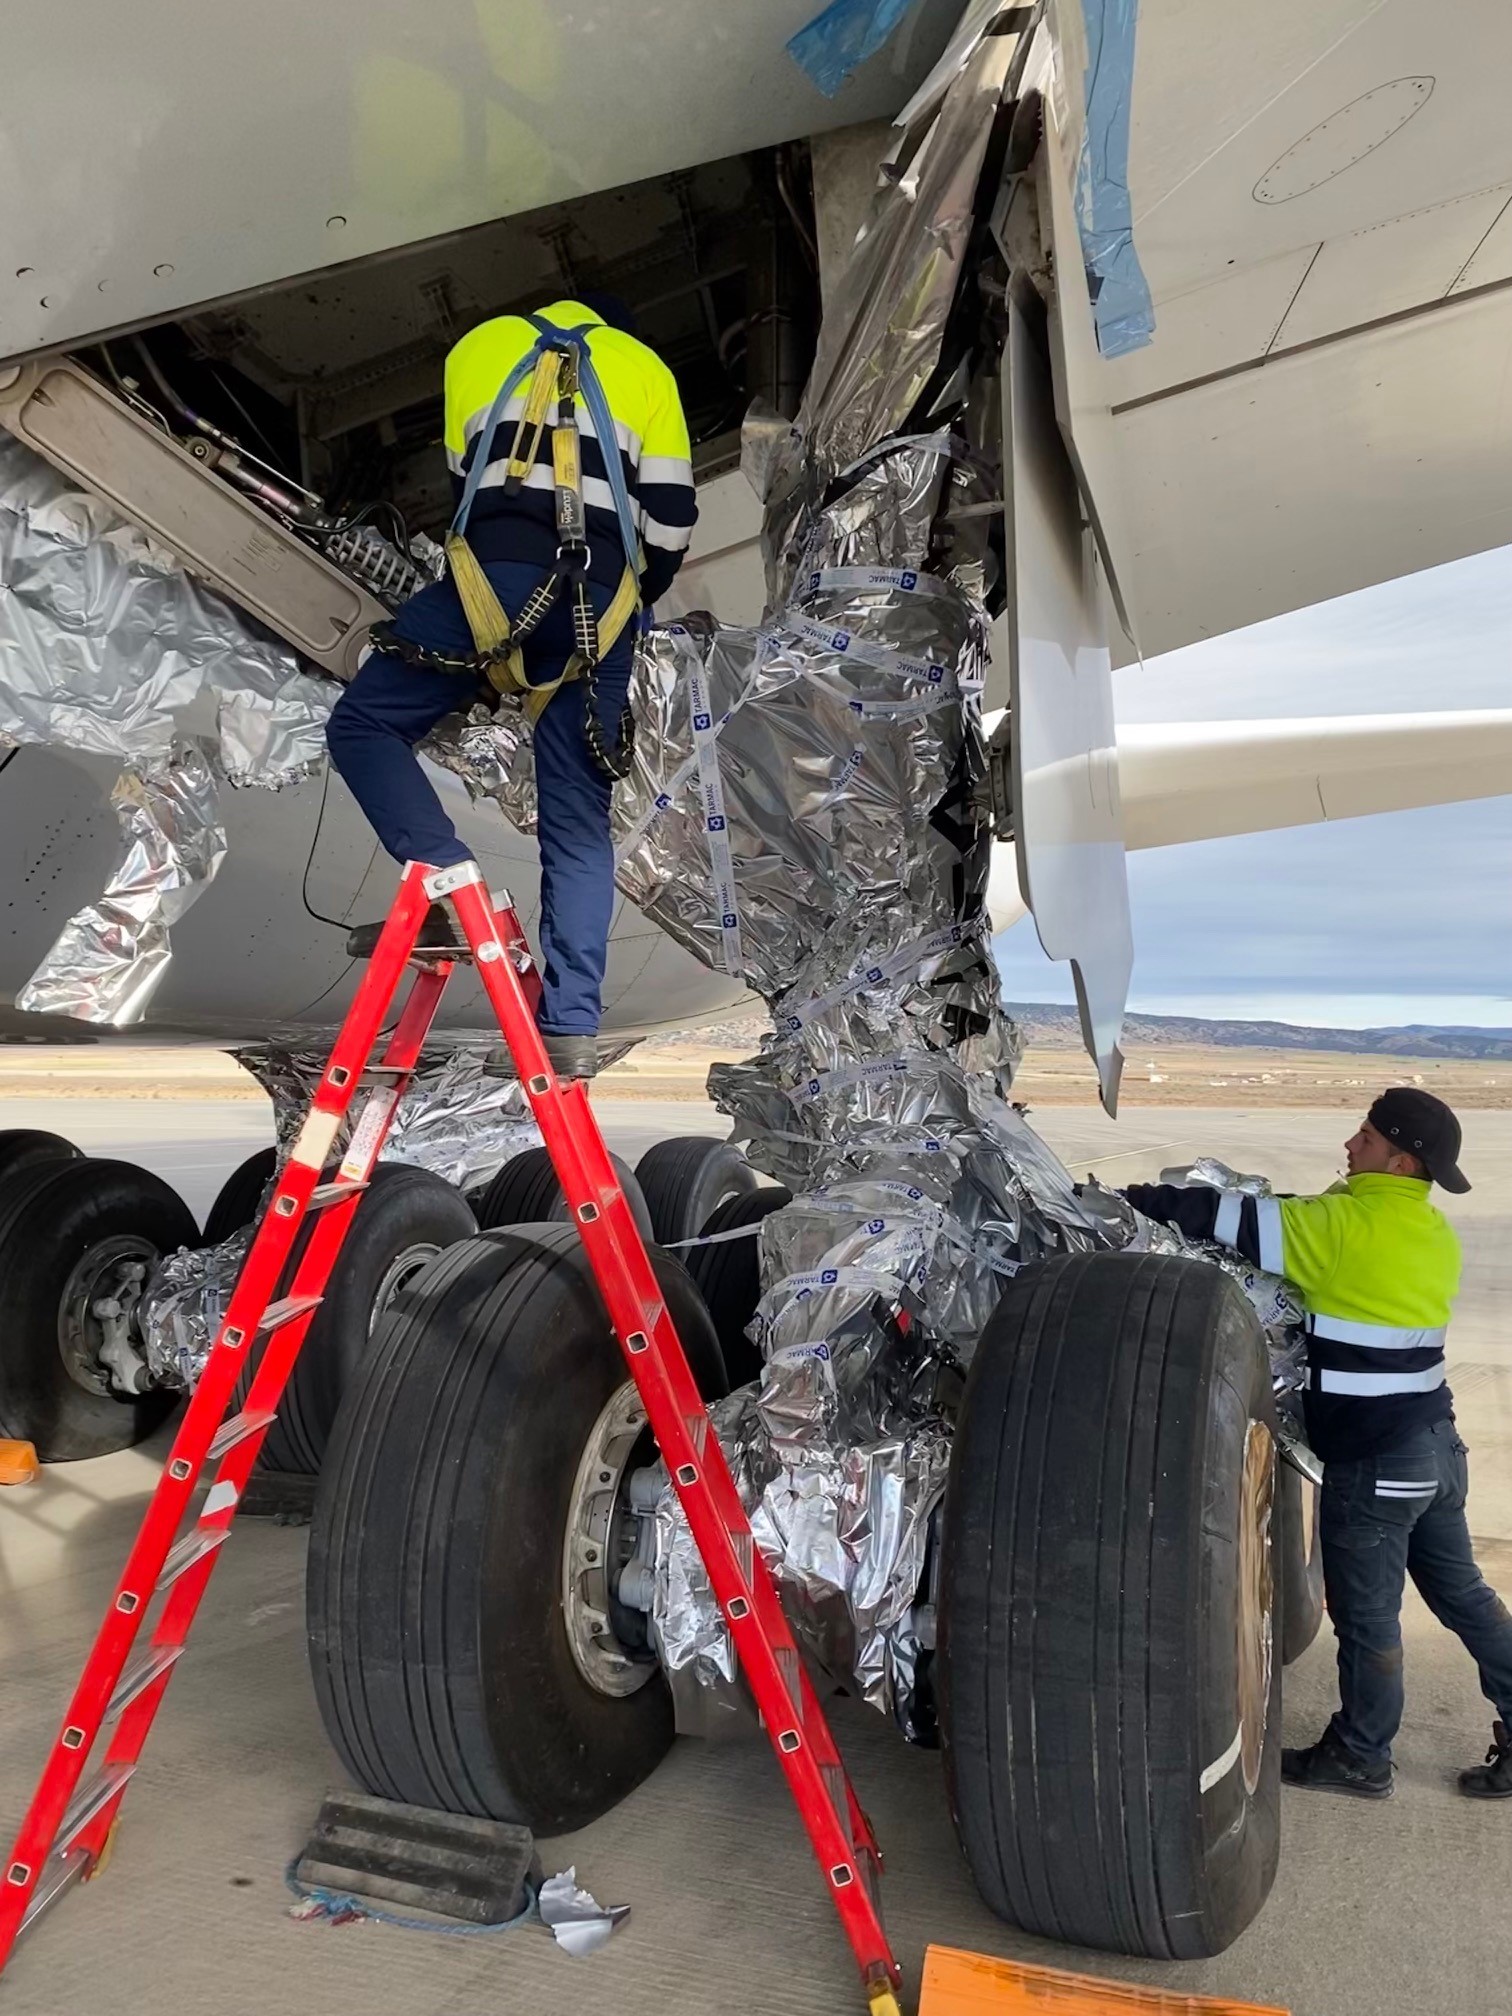 Reifen und Hydraulikschläuche wurden bei den A380 in Teruel besonders sorgfältig verpackt Bild: Dietmar Plath